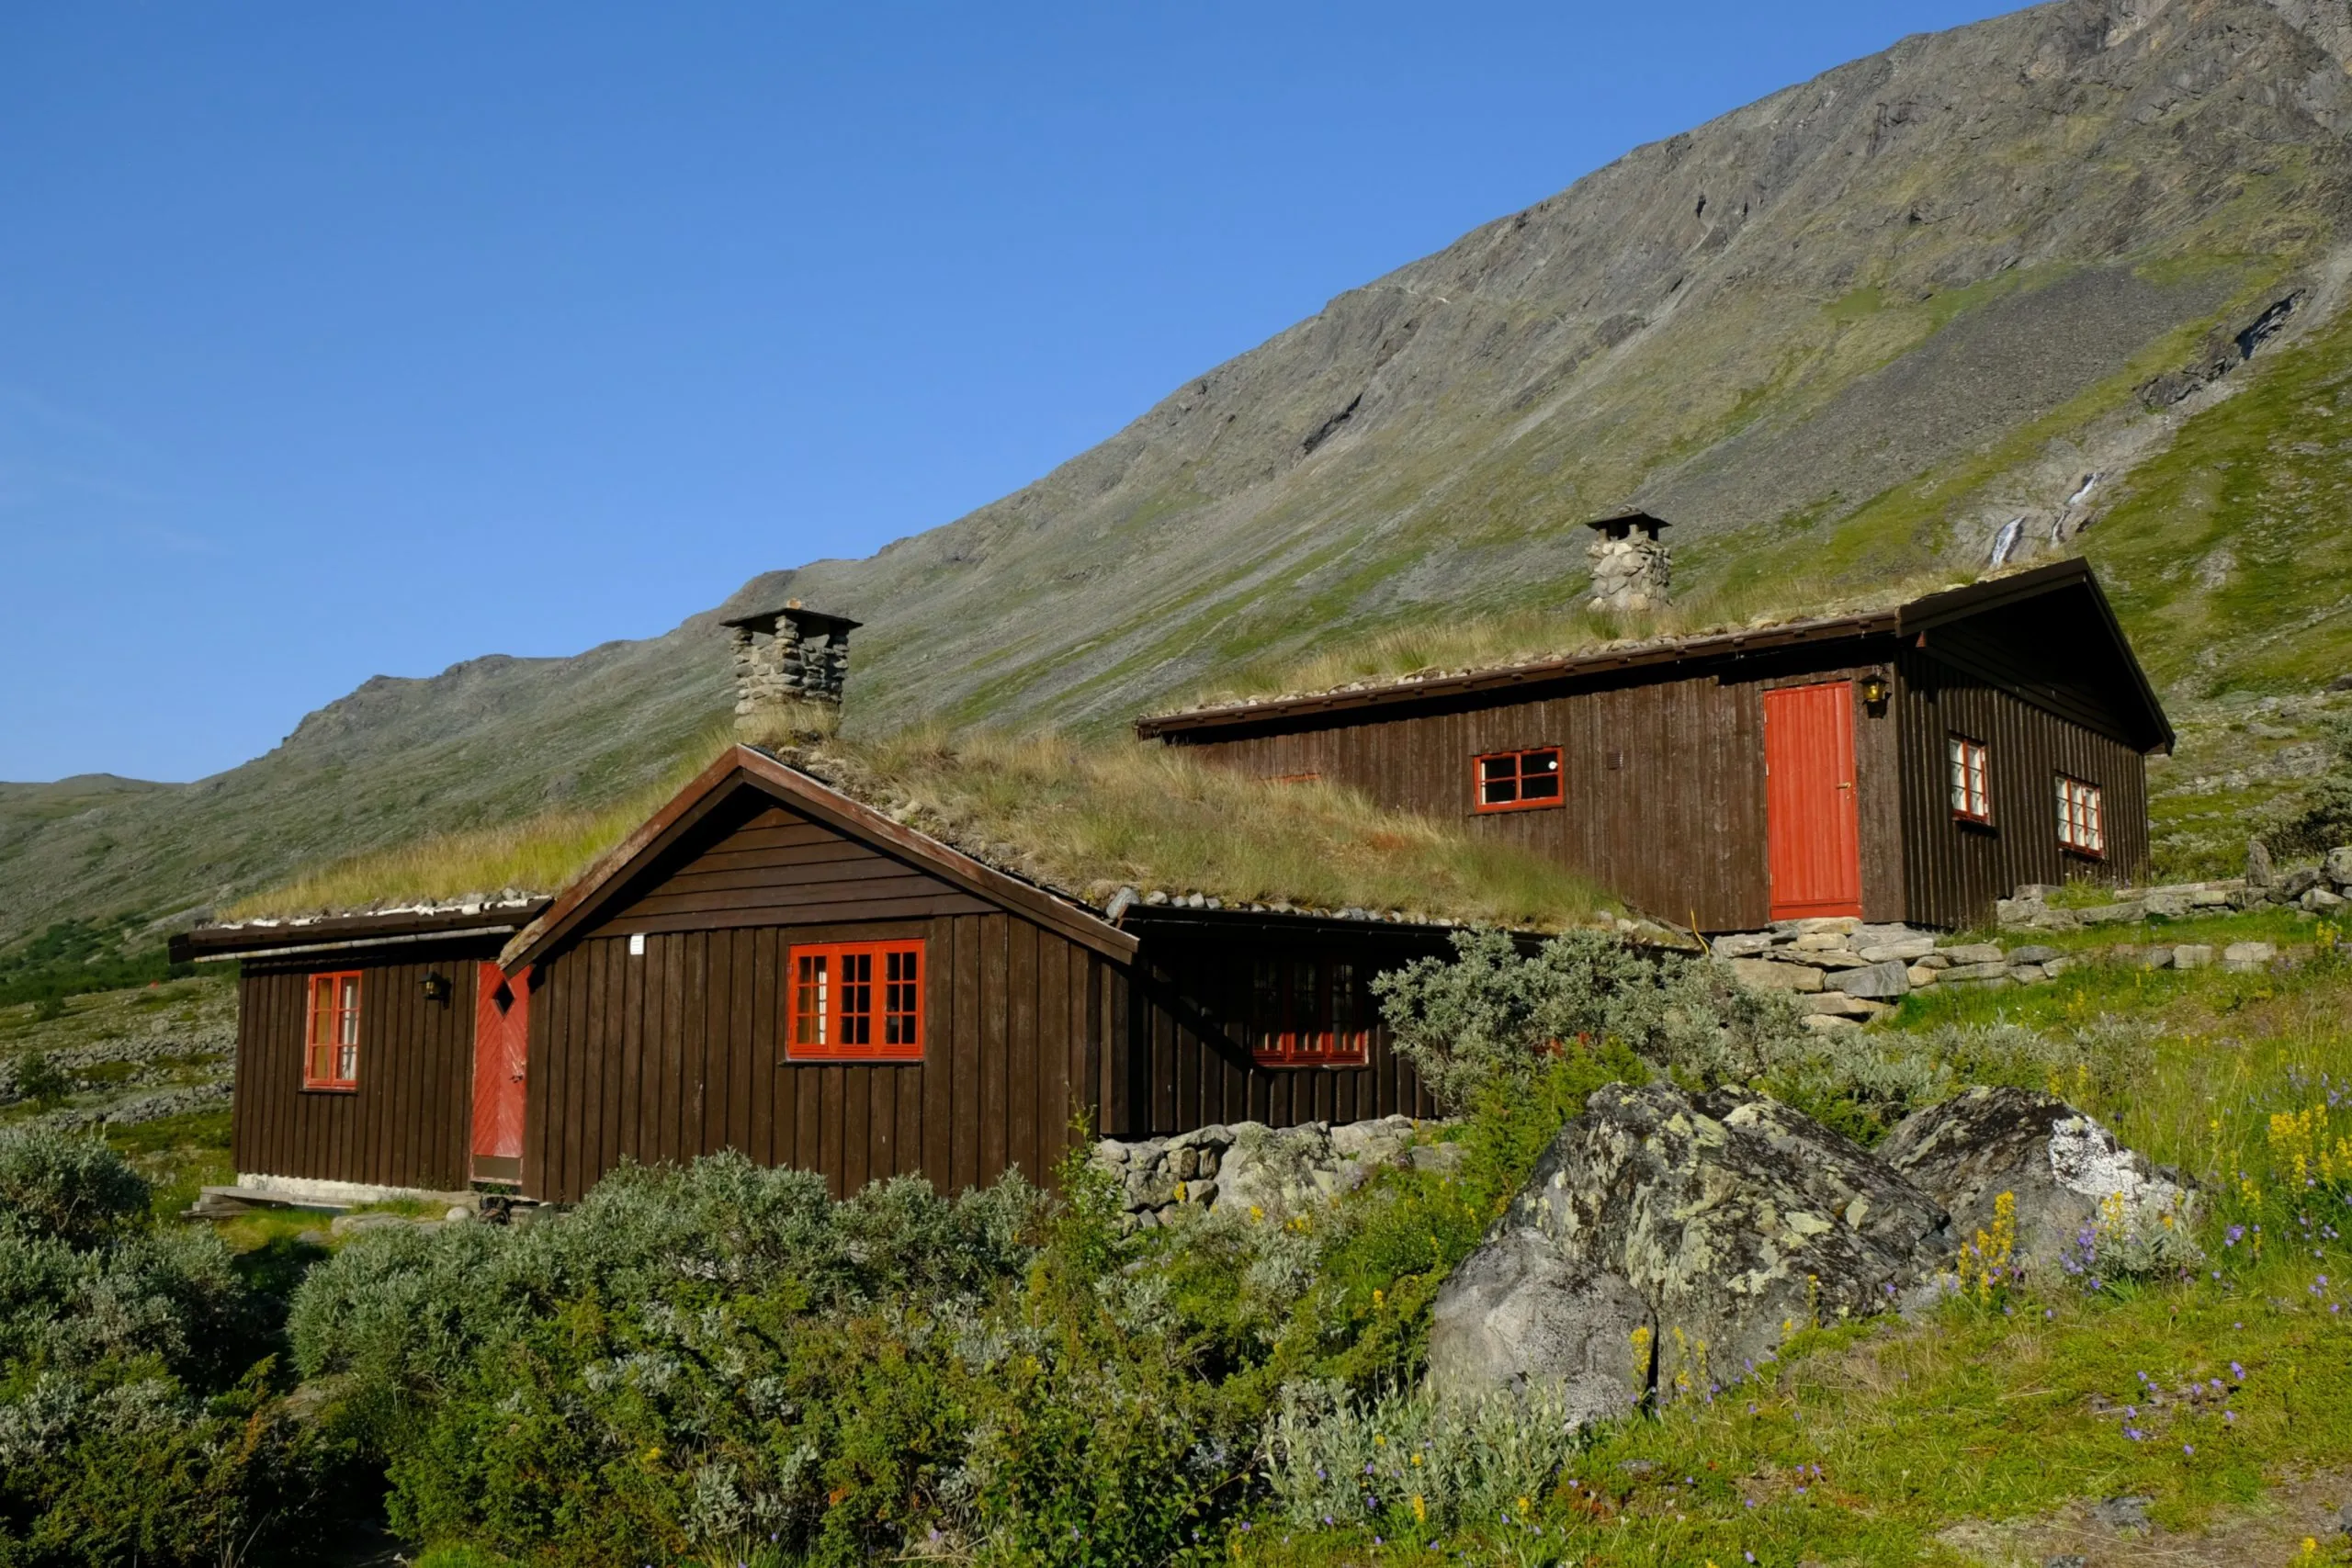 Traditionele houten turfhuizen in de Noorse bergen. Spiterstulen - Noors toeristenhostel in het Jotunheimen-gebergte, in het Visdalen-dal, aan de Visa-rivier. Nationaal park Jotunheimen